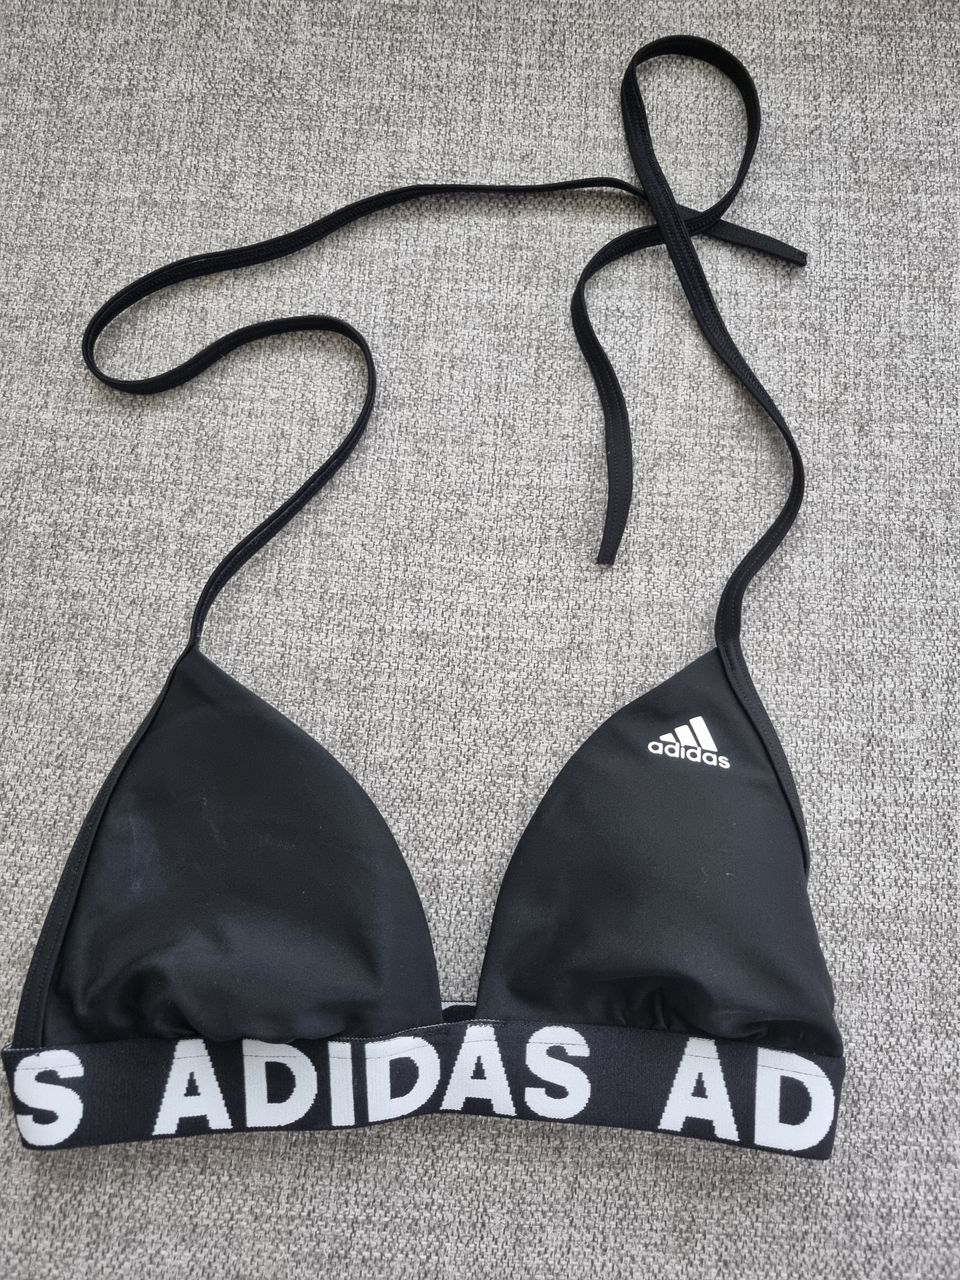 Käyttämättömät Adidas bikinit koko 34